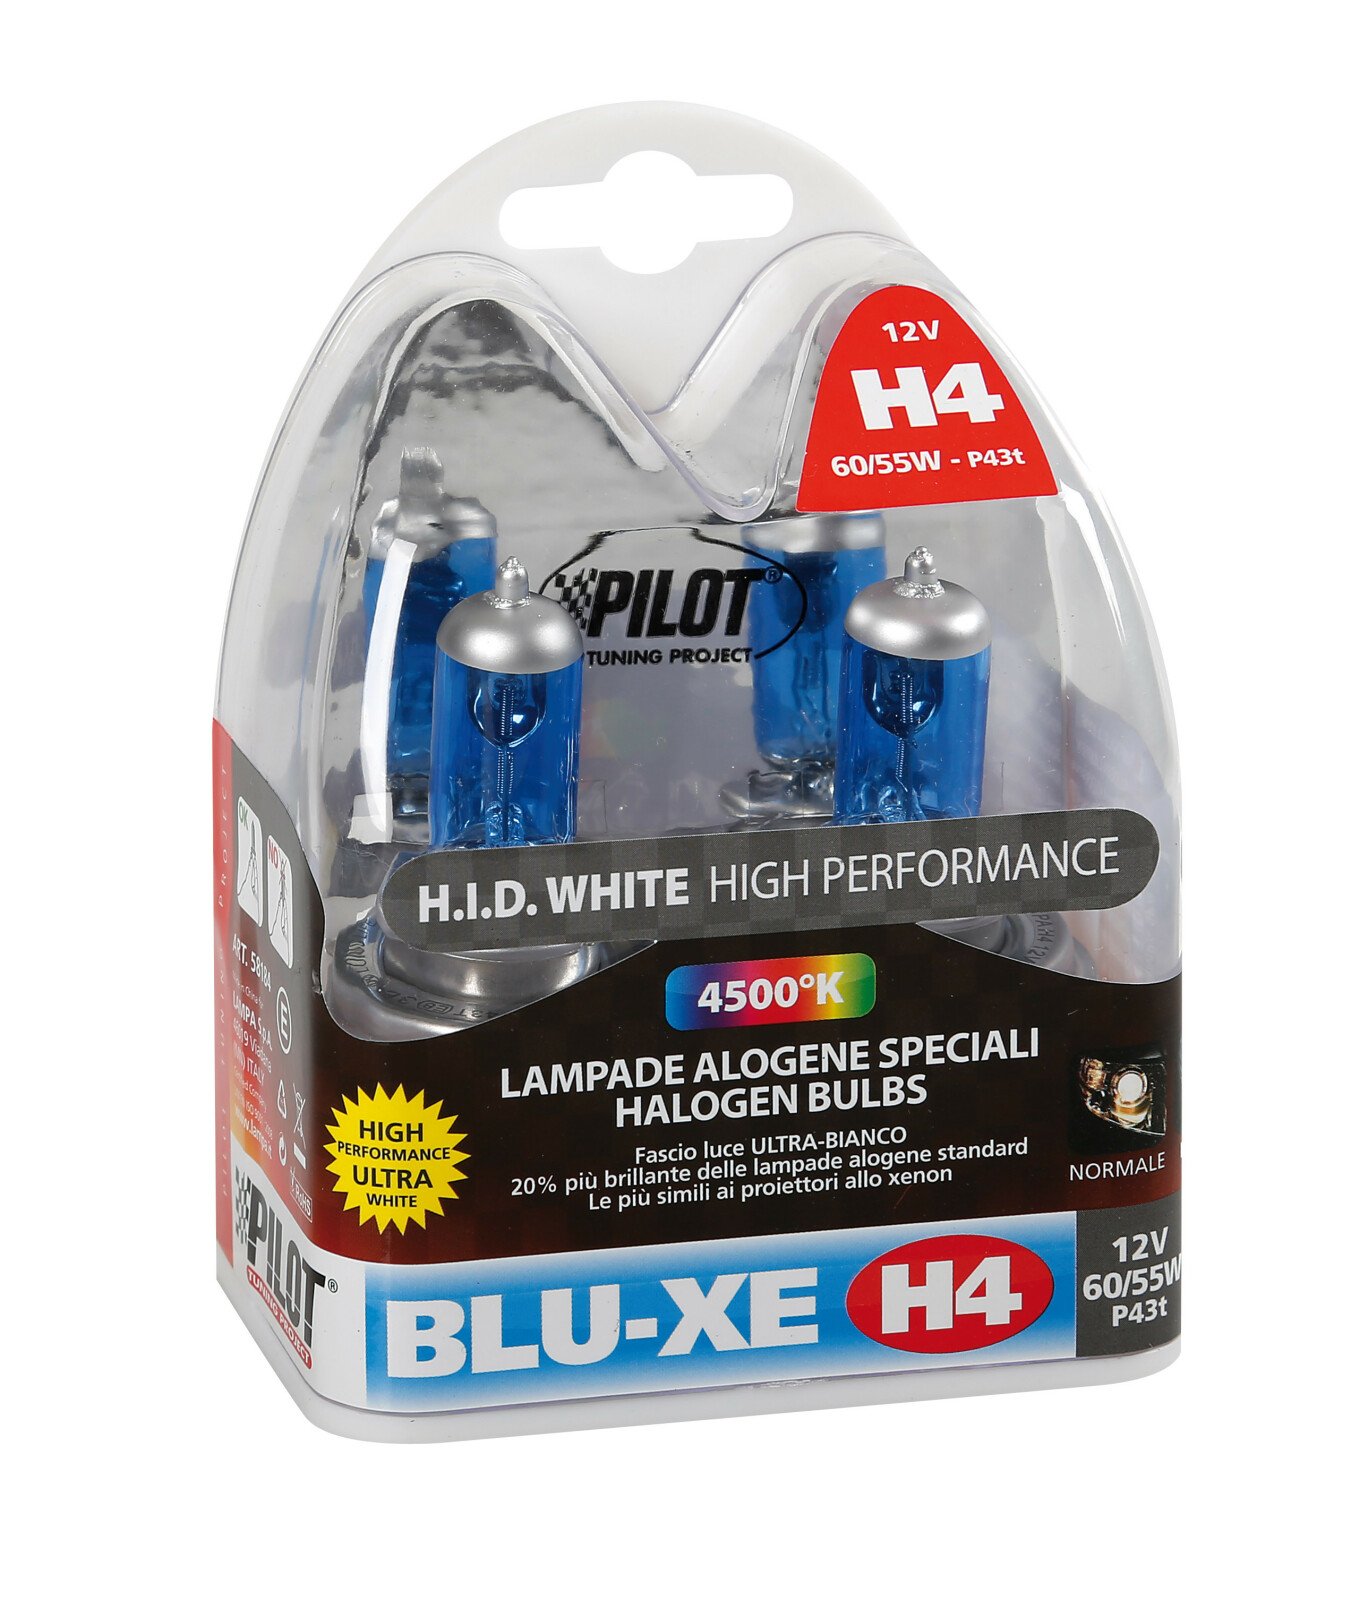 12V Blu-Xe halogen lamp H4 60/55W P43t 2pcs thumb